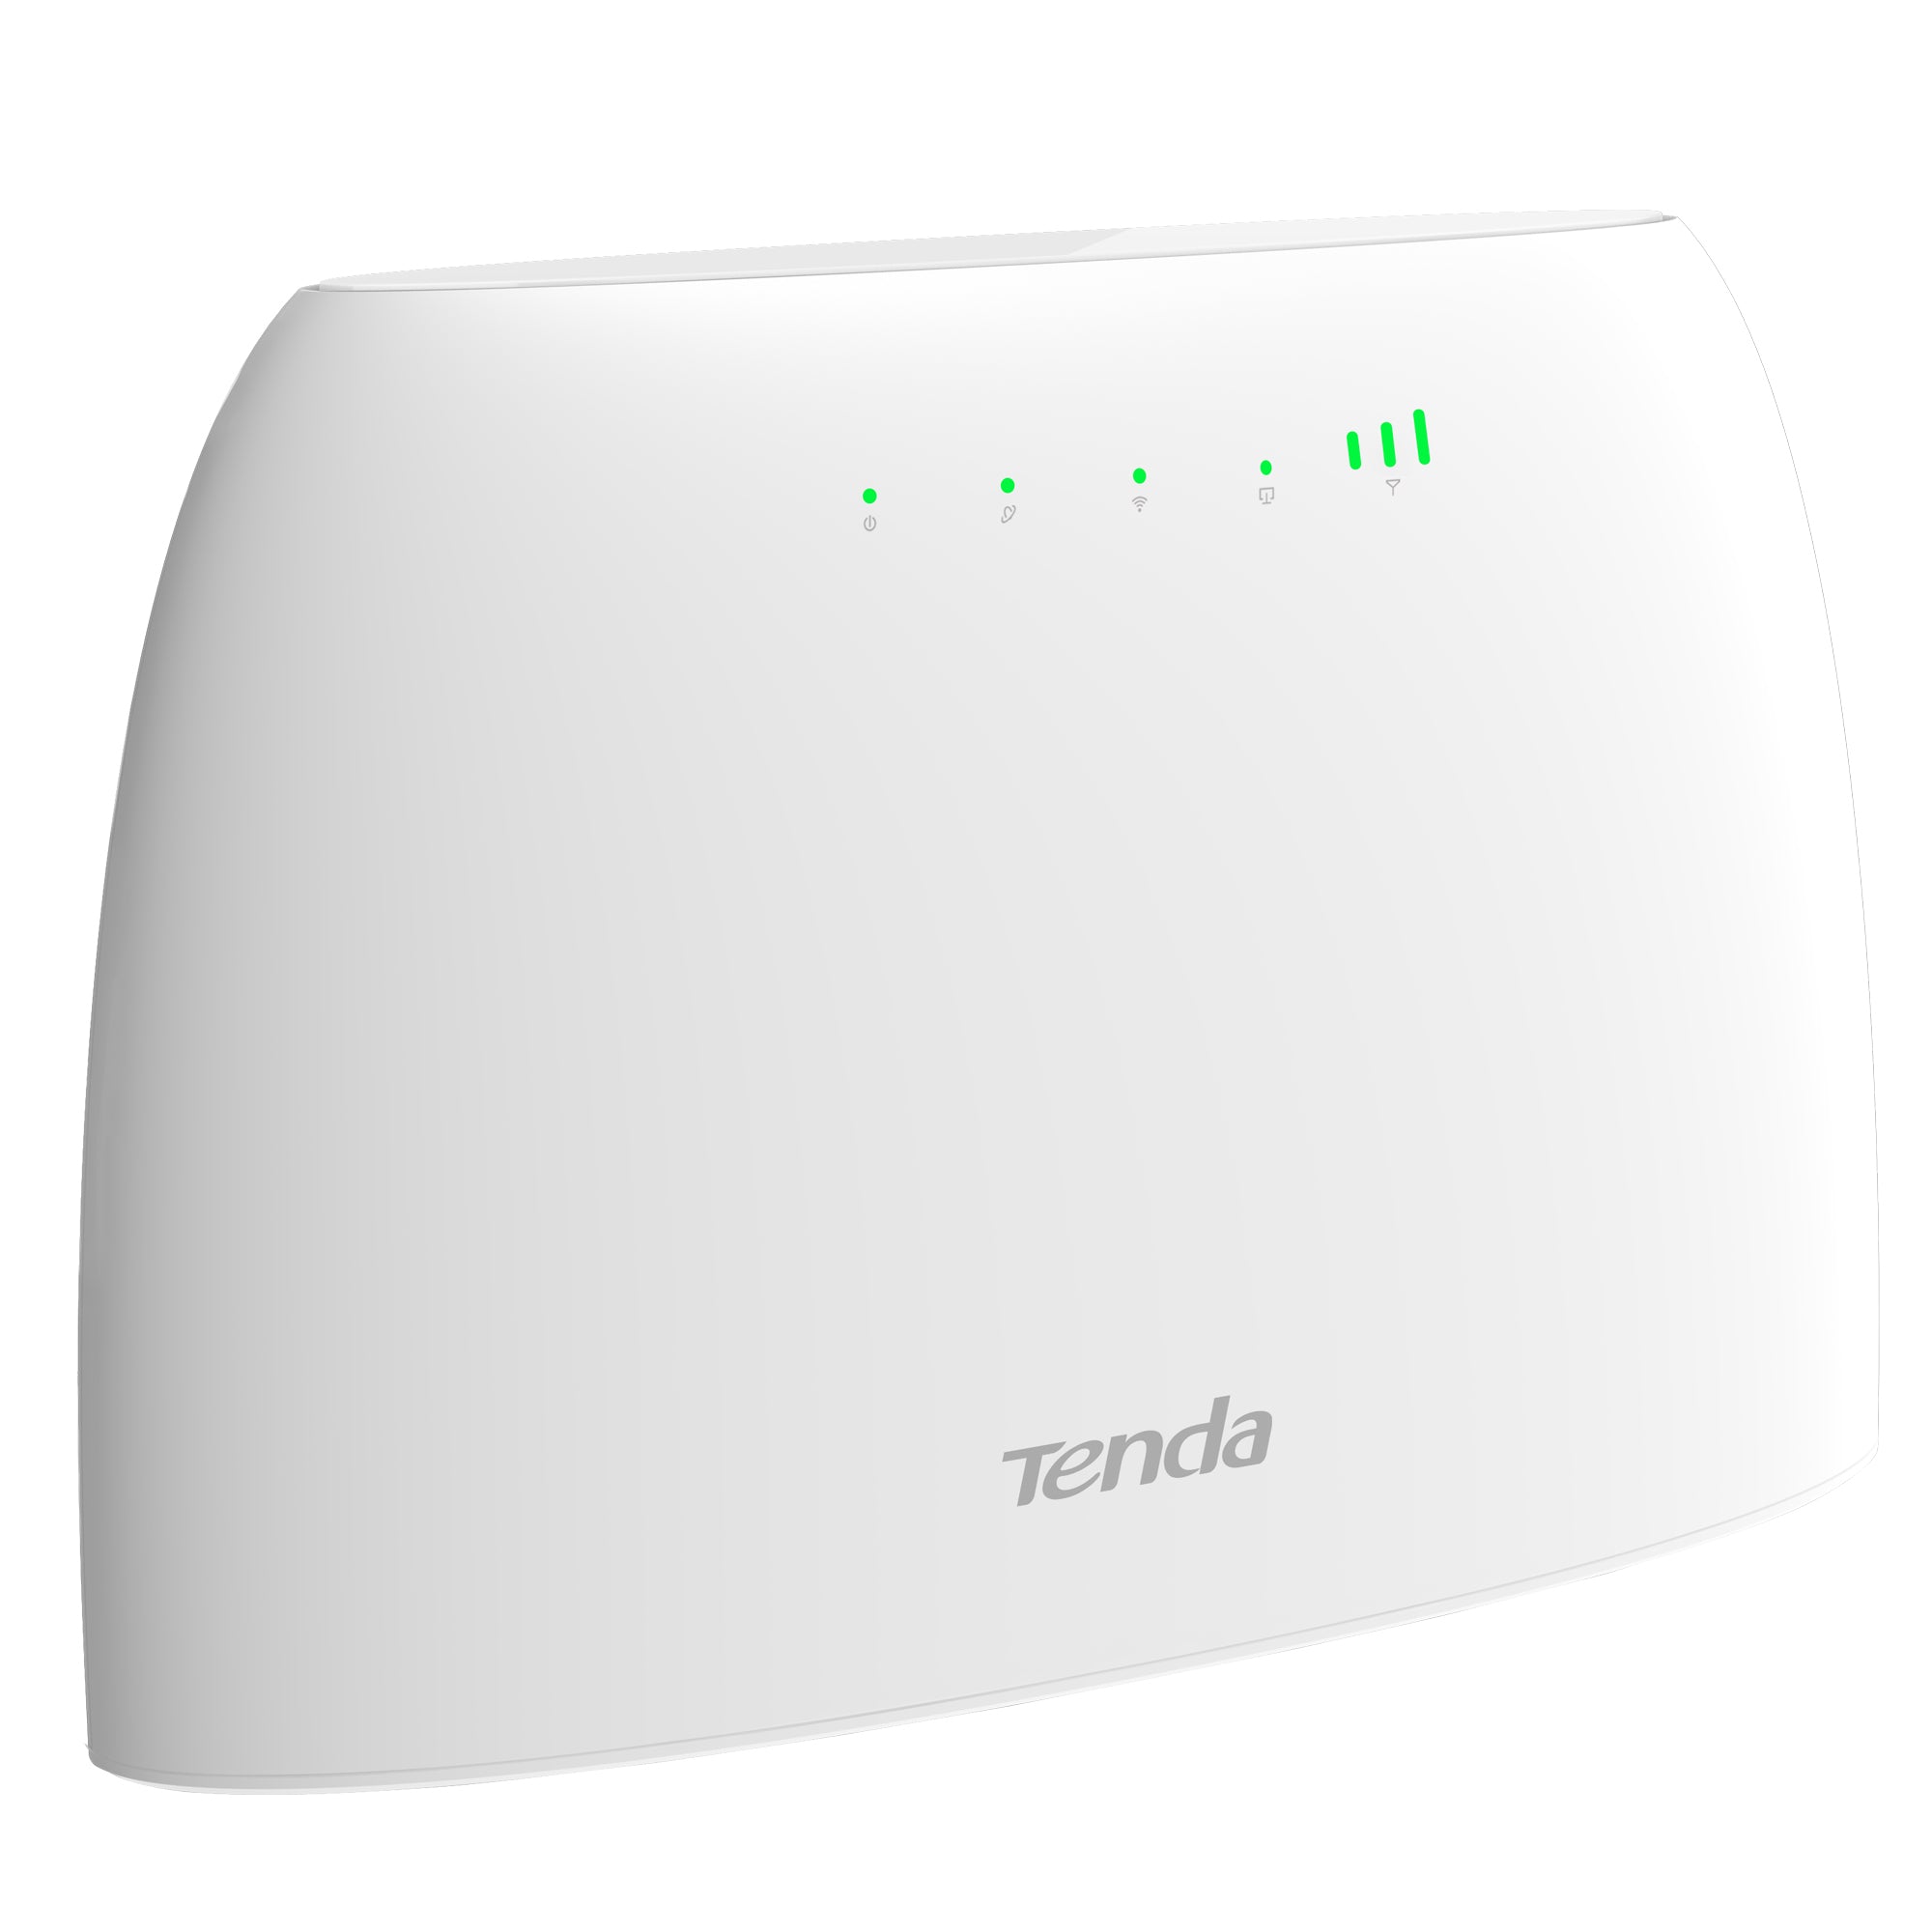 tenda-router-wi-fi-4g-lte-n300-cat-4